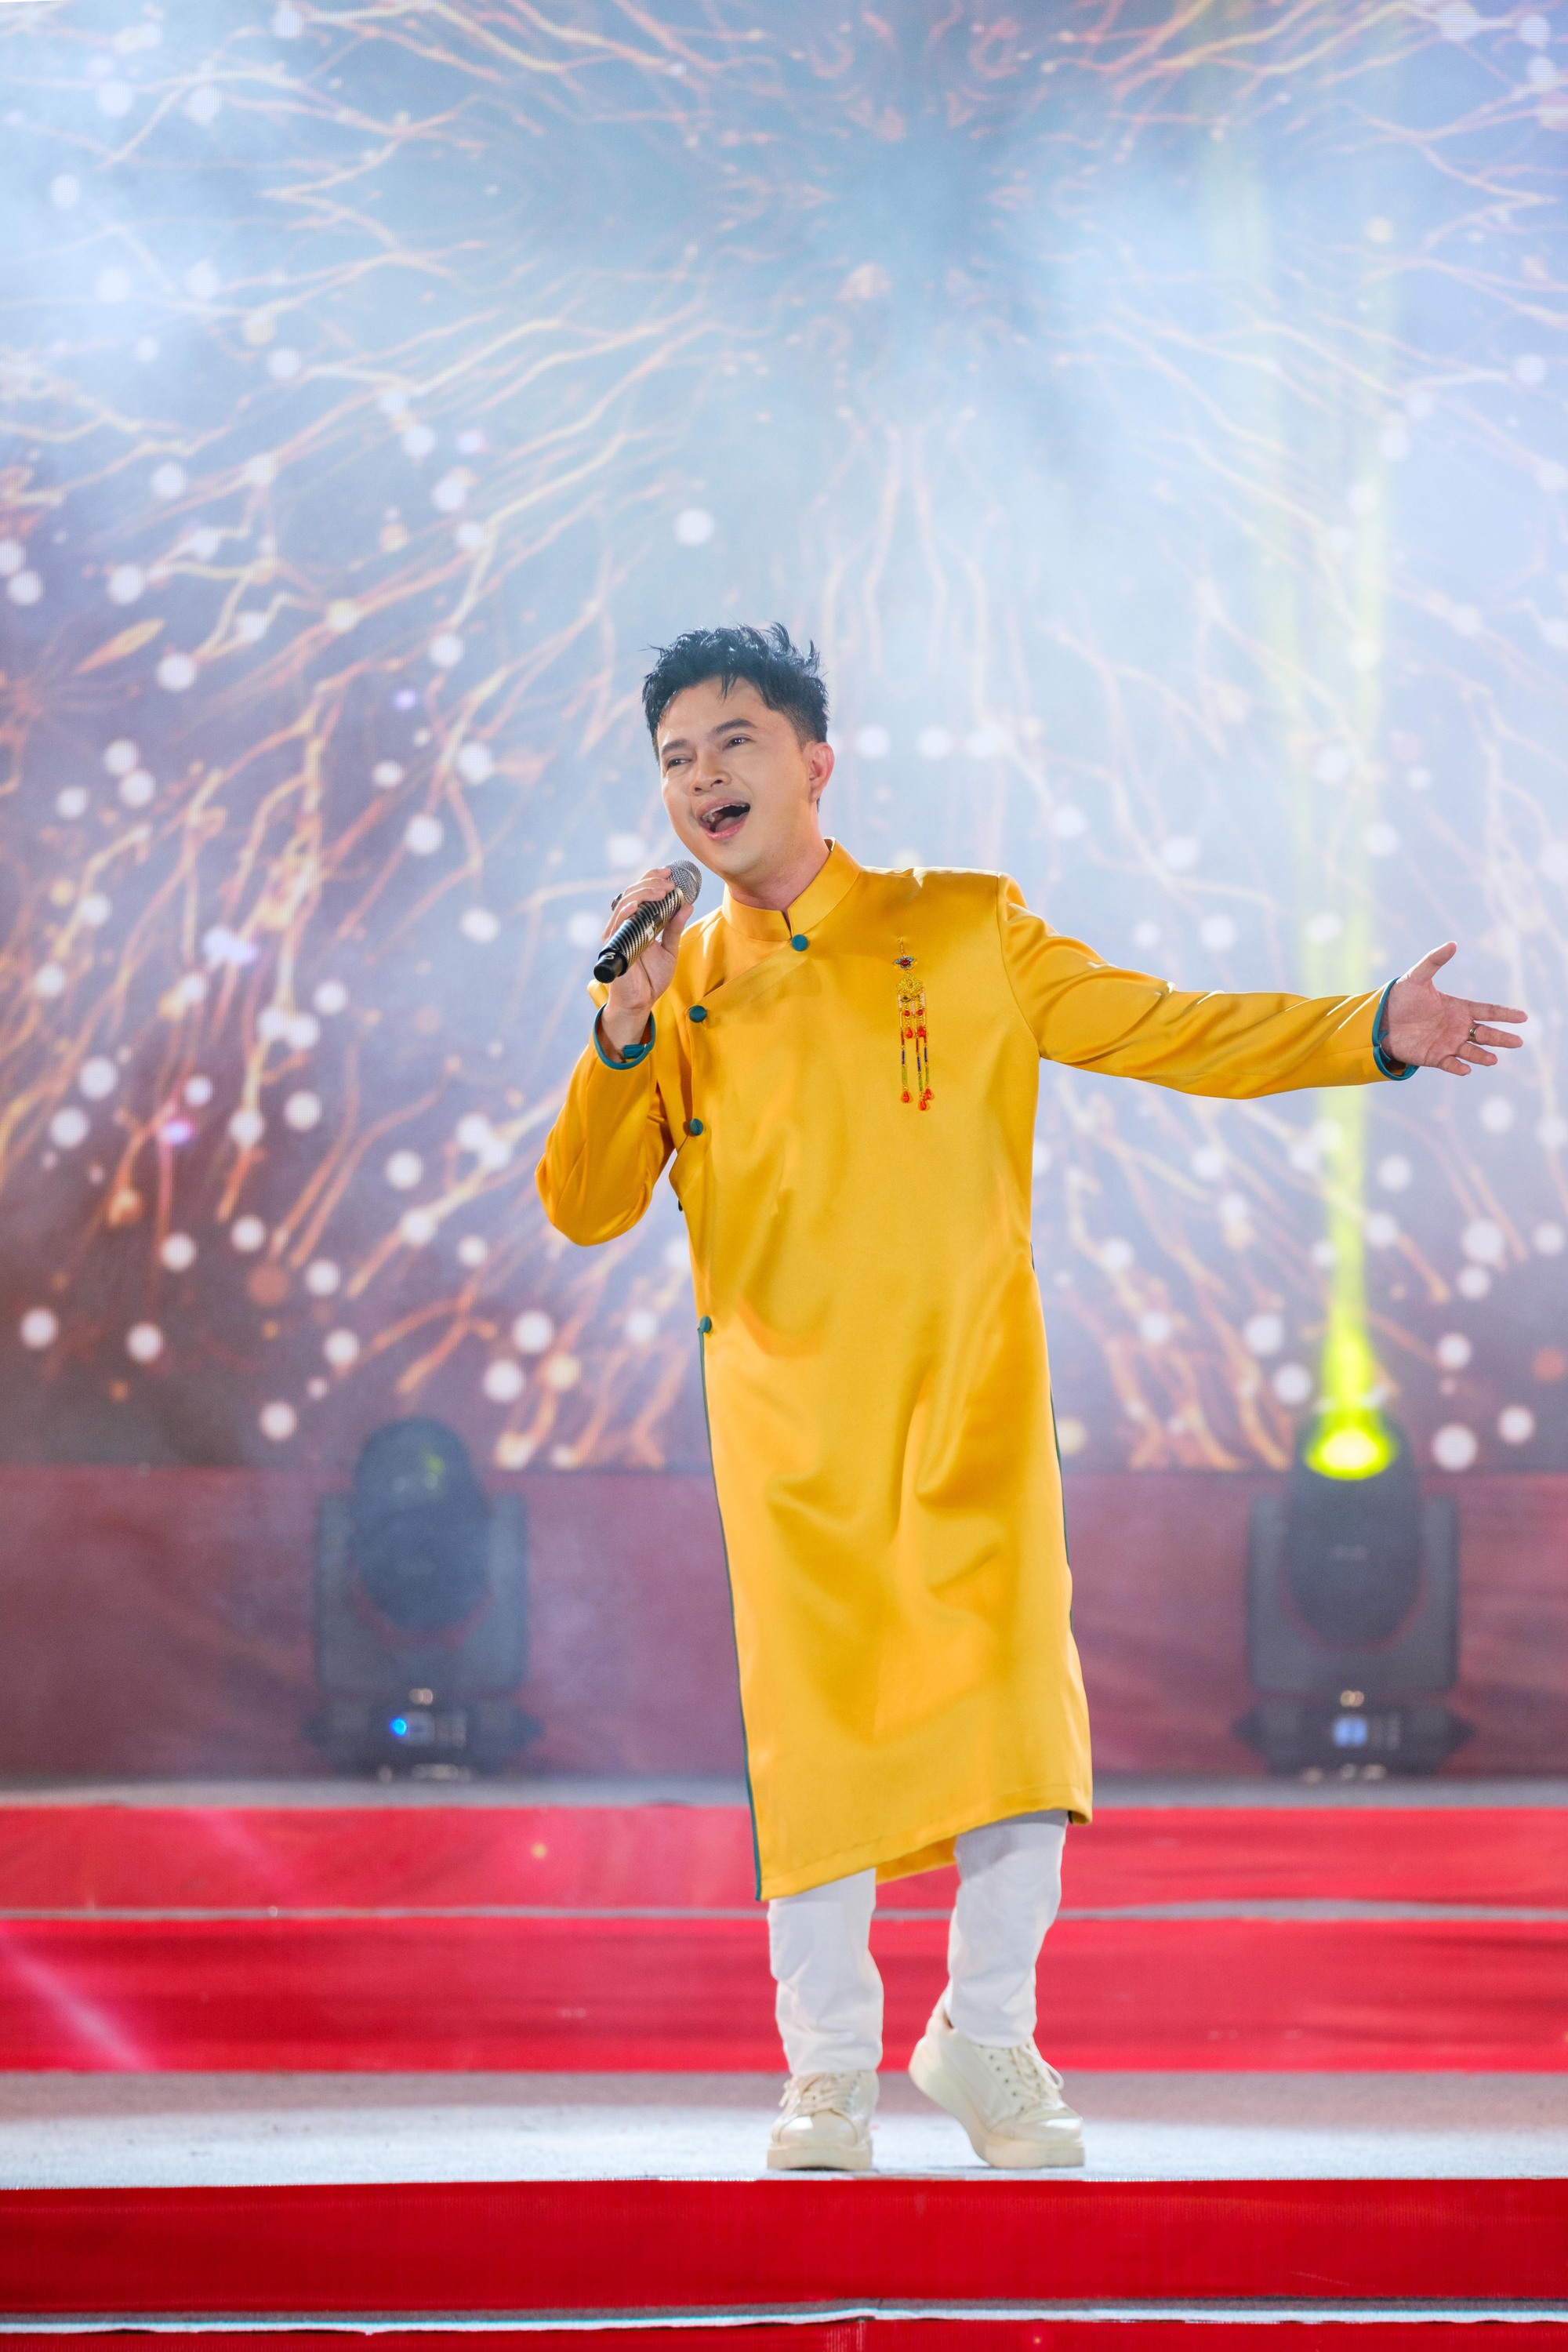 Nam Cường làm liveshow miễn phí cho 1000 khán giả ngày giáp Tết - Ảnh 1.